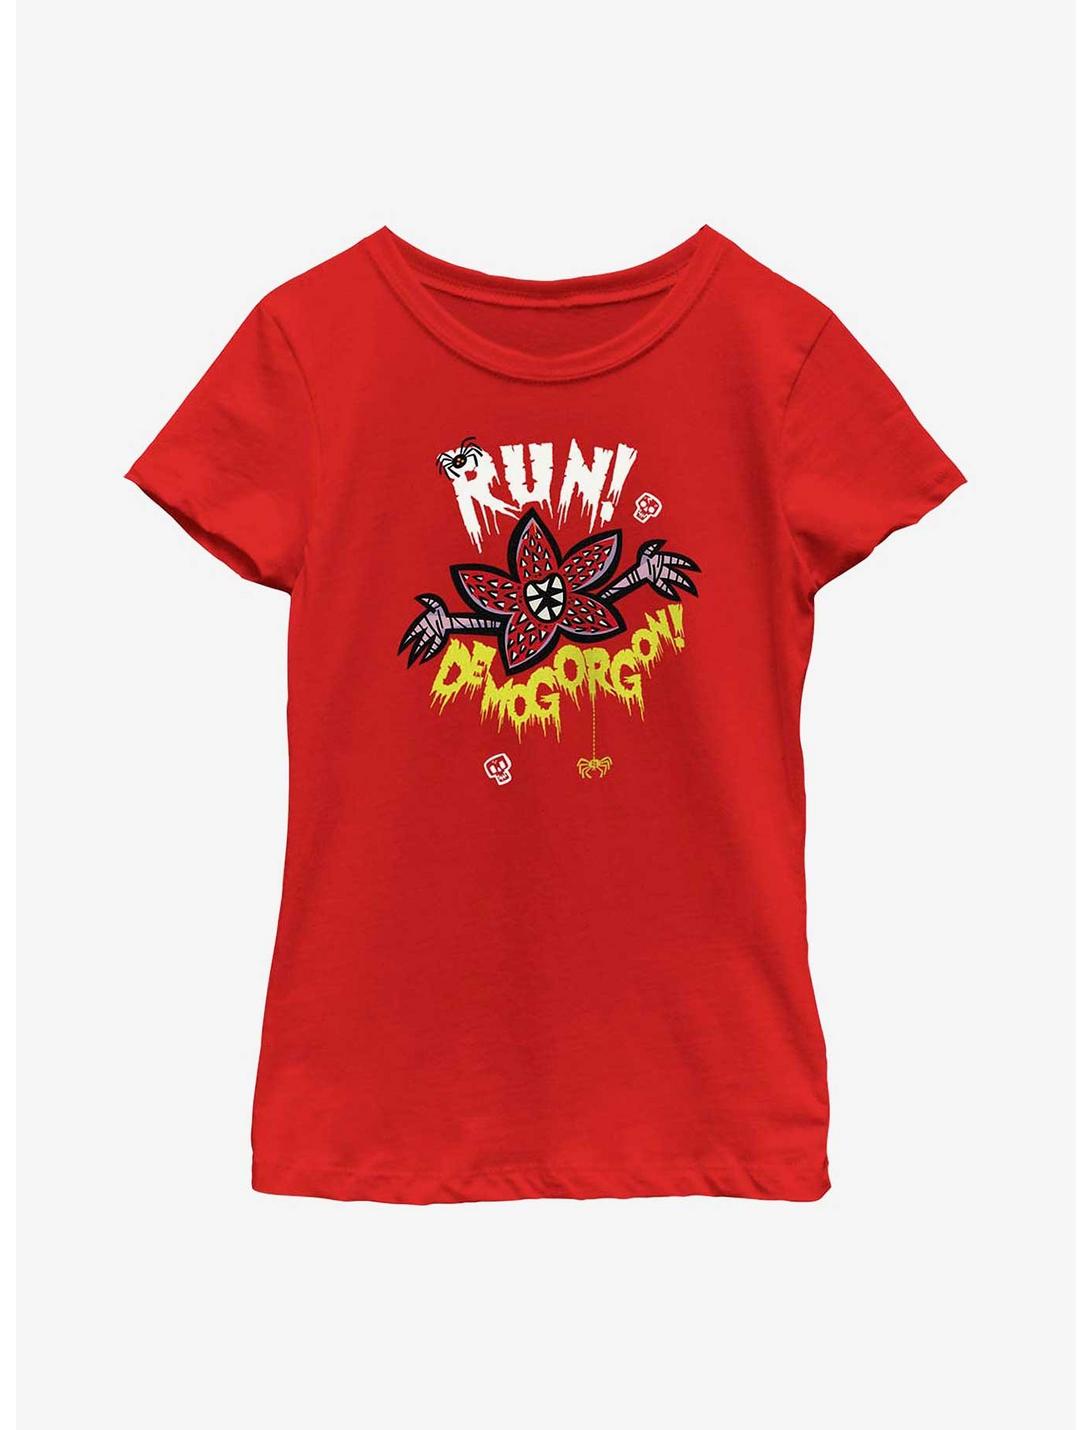 Stranger Things Run Away Youth Girls T-Shirt, RED, hi-res